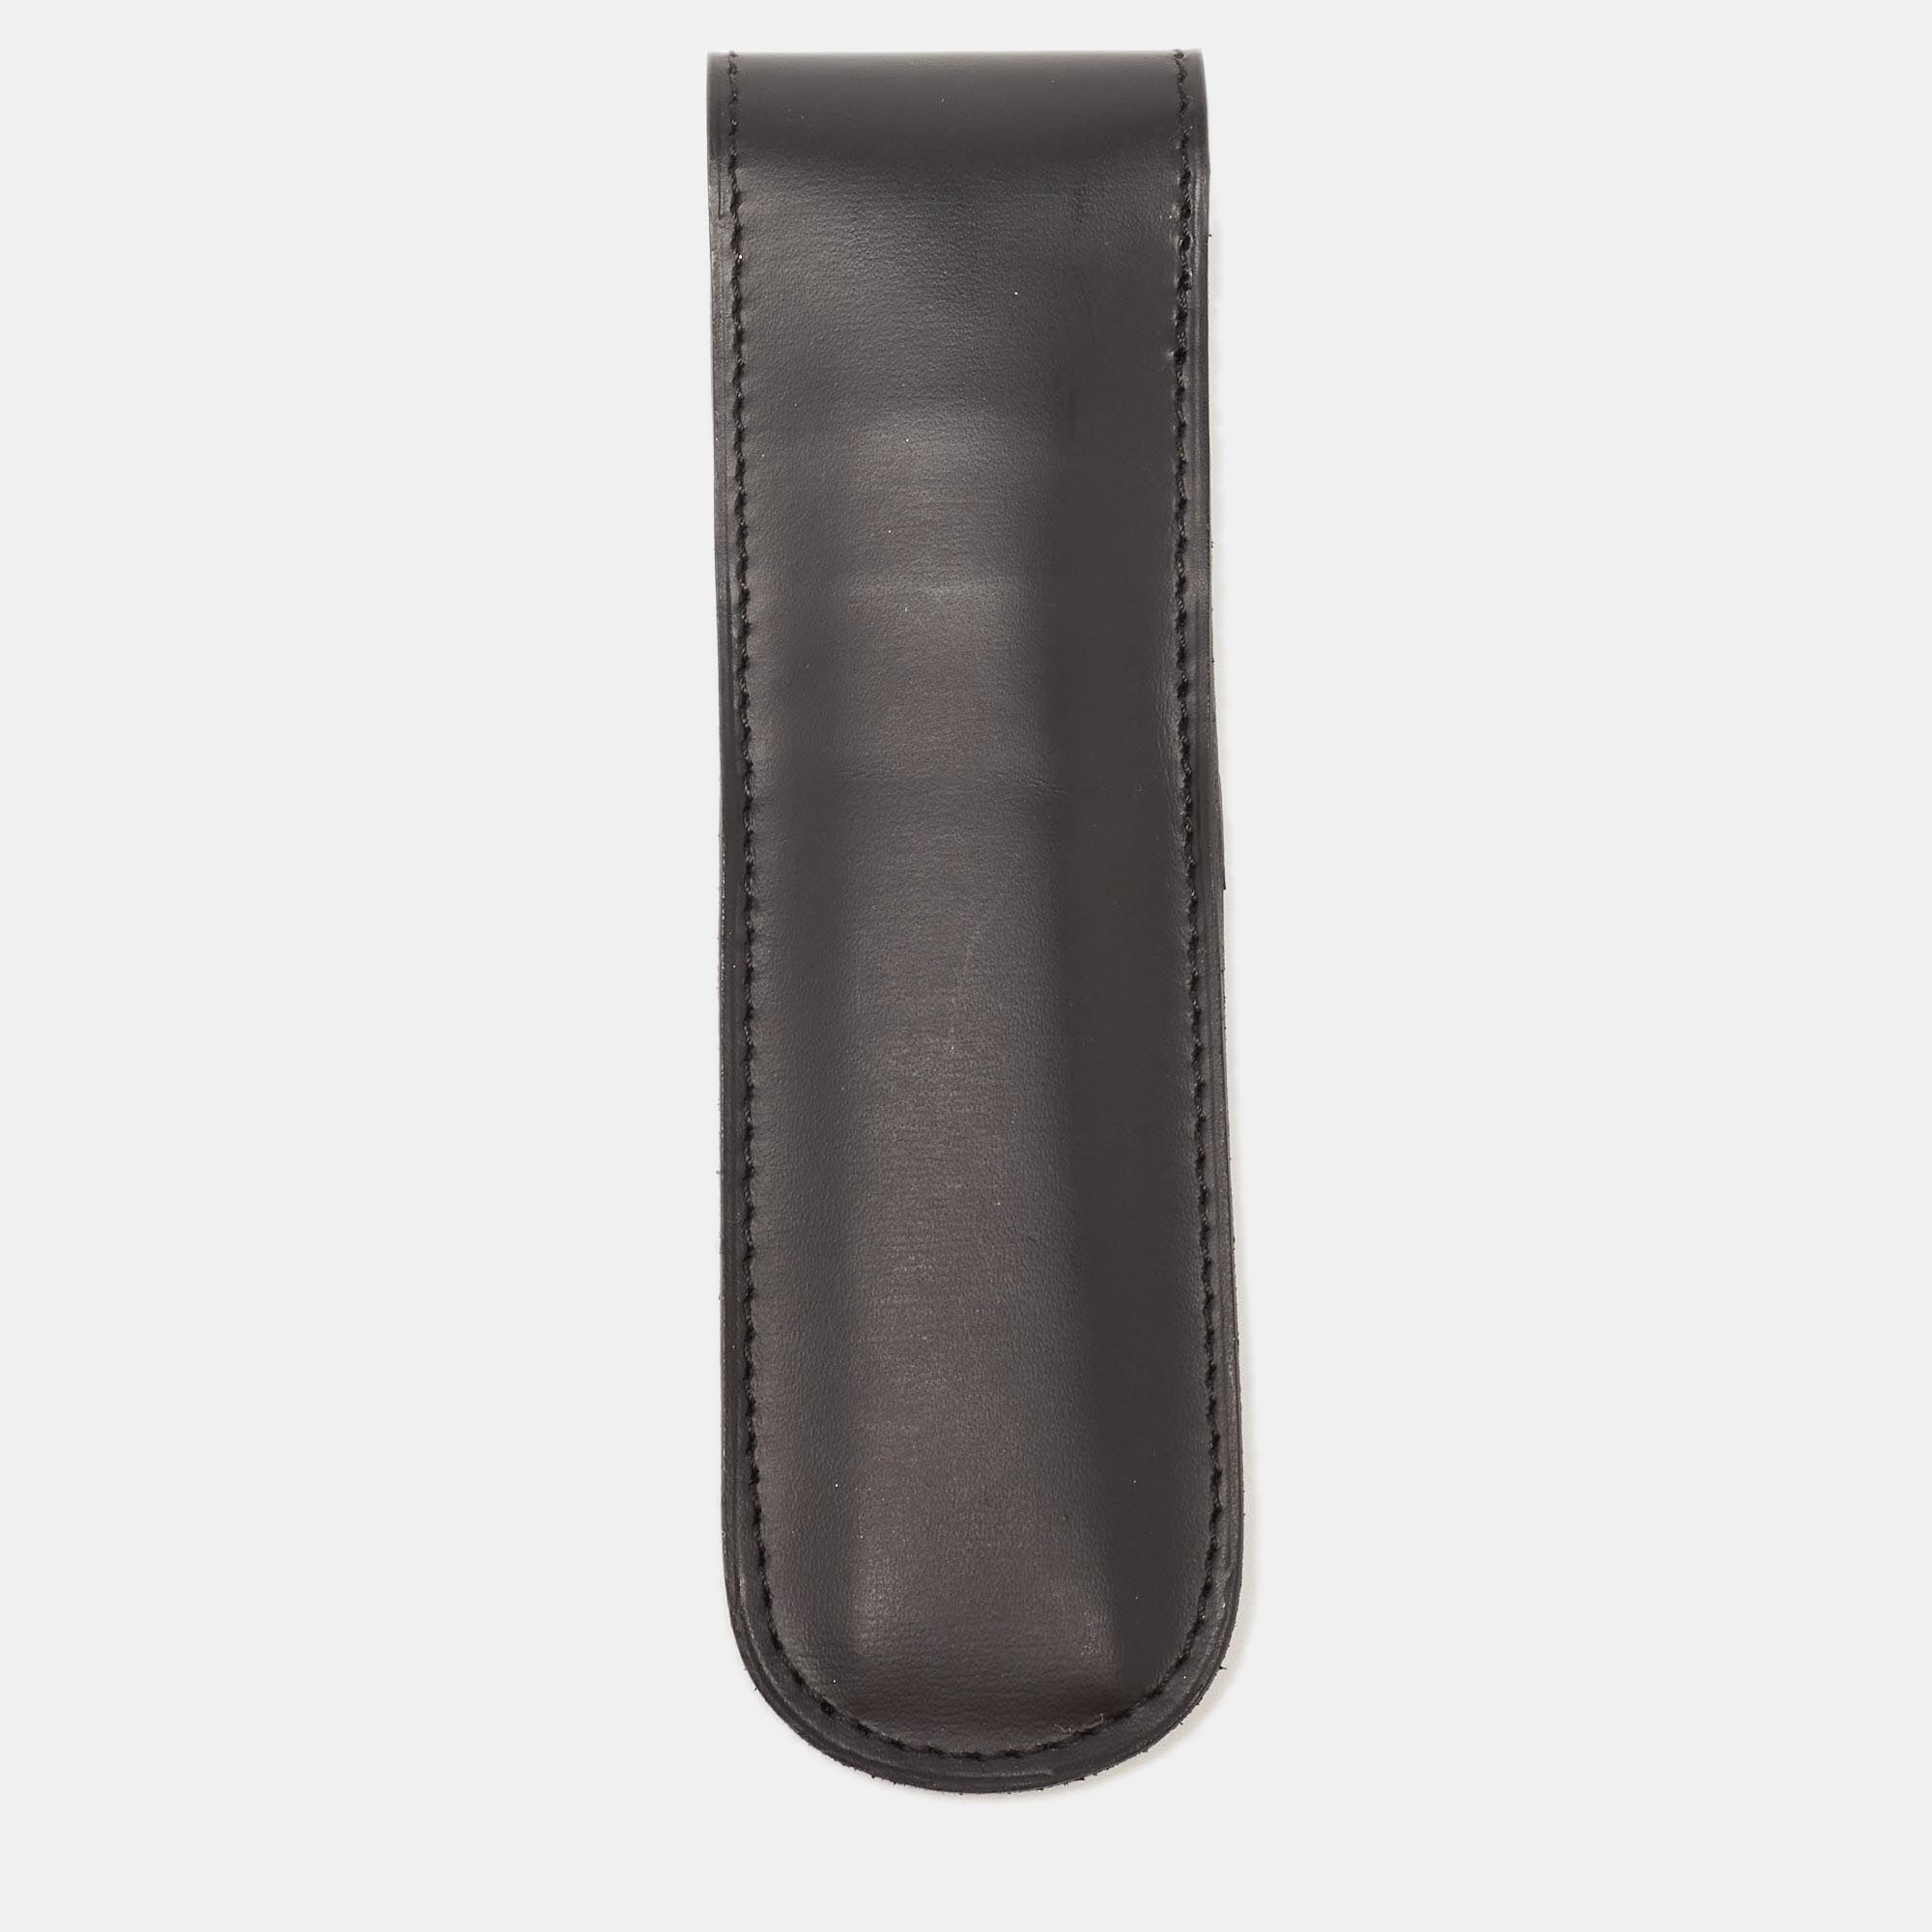 Cartier Black Leather Flap Pen Pouch